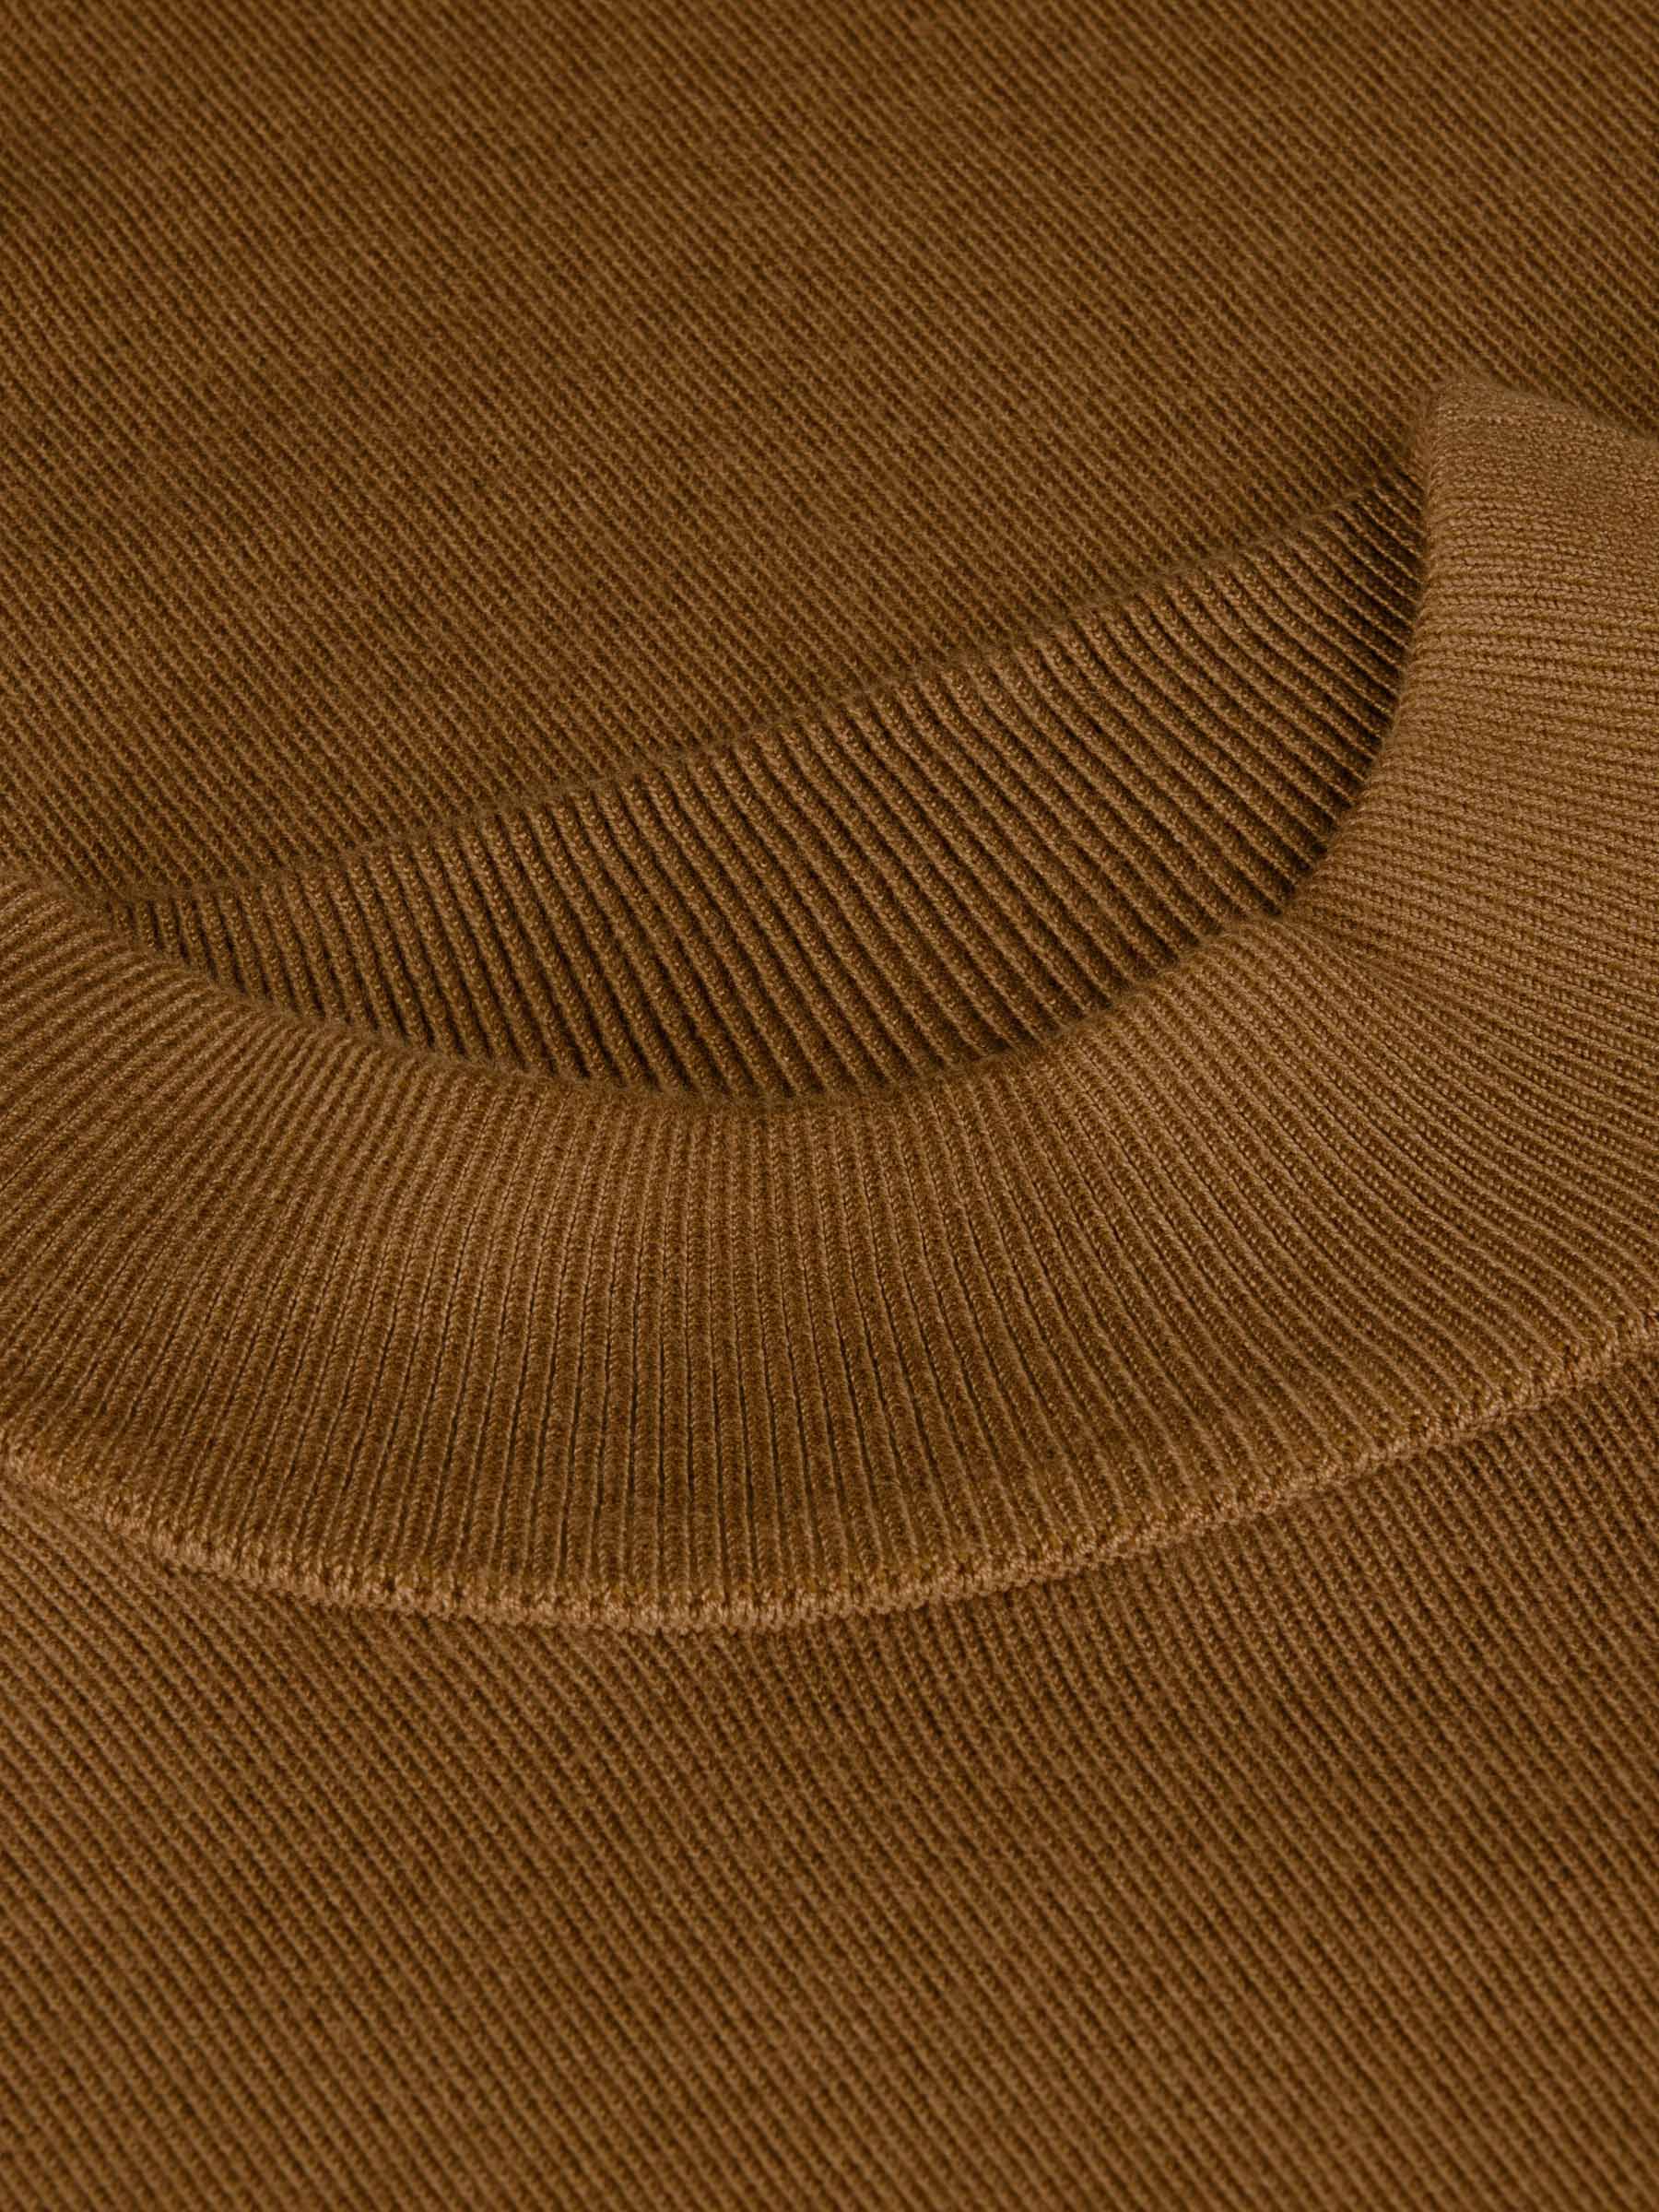 Siena Round-Necked Brown Sweater